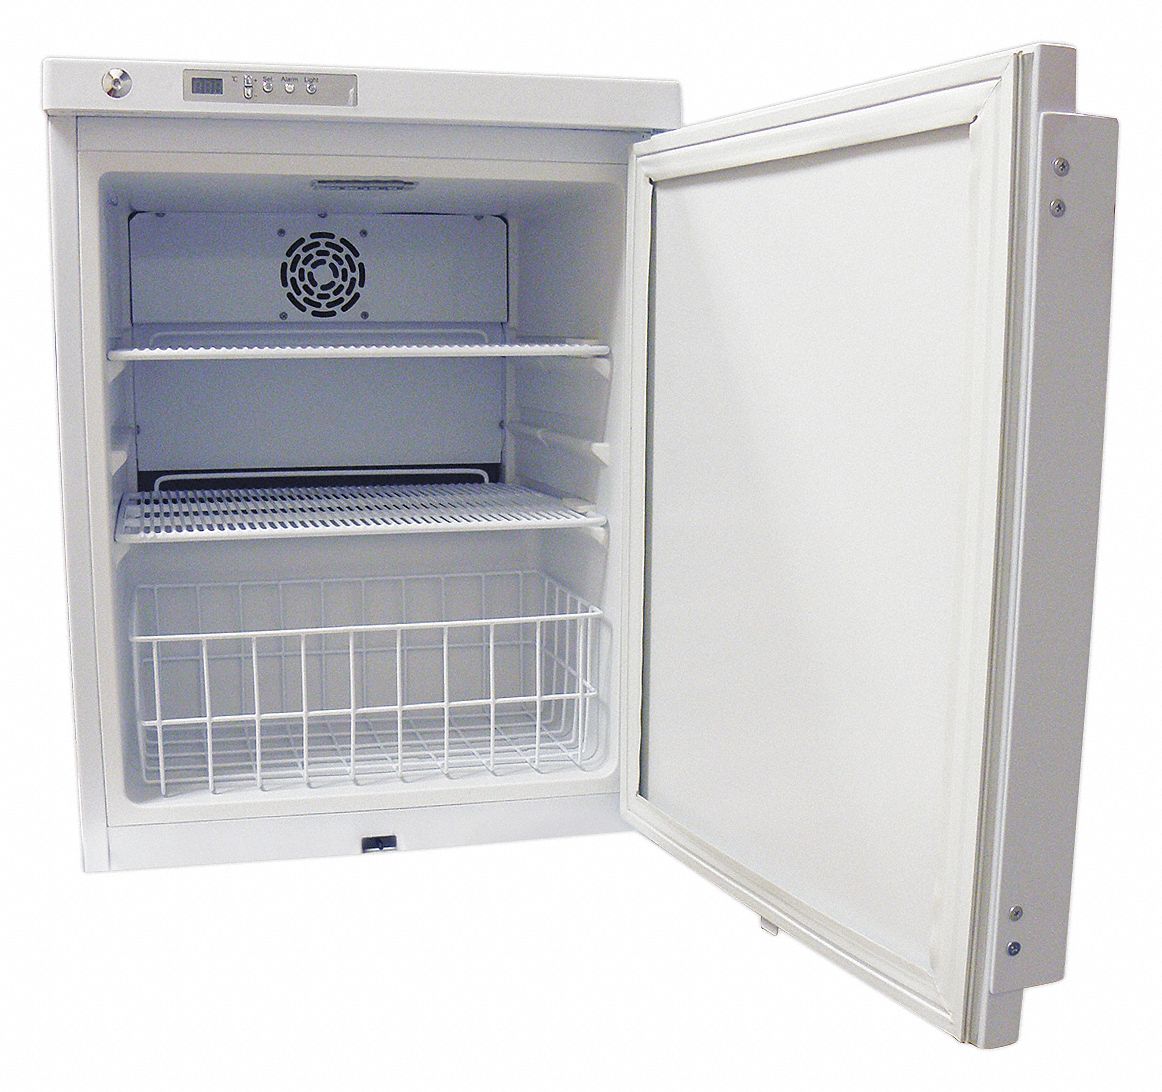 Refrigerator - Grainger